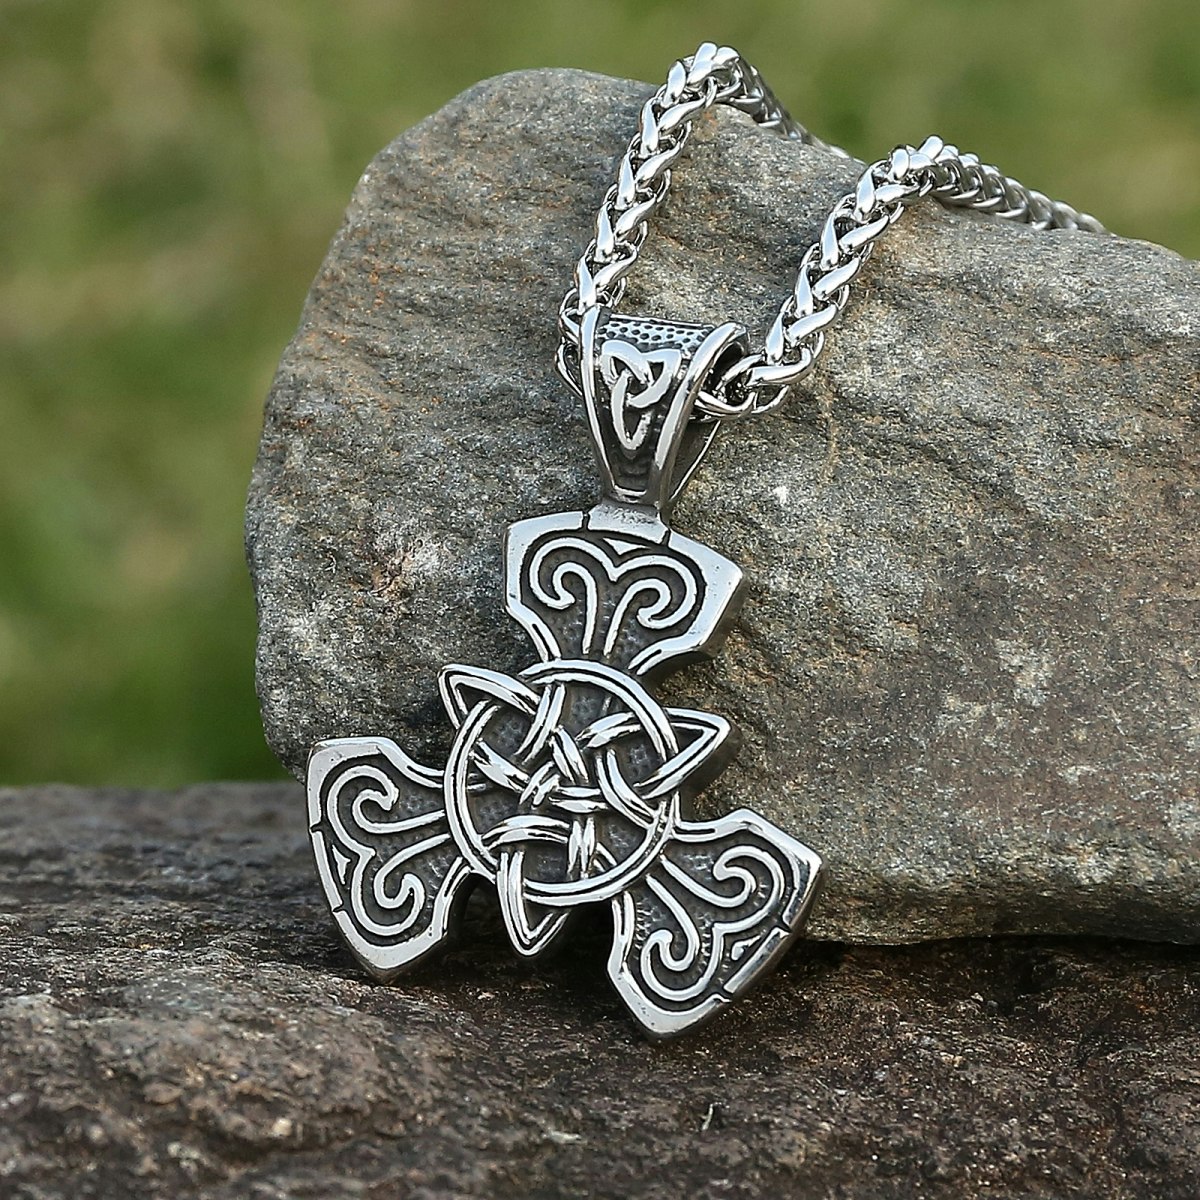 Keltisk knute kors - Viking-shop.no